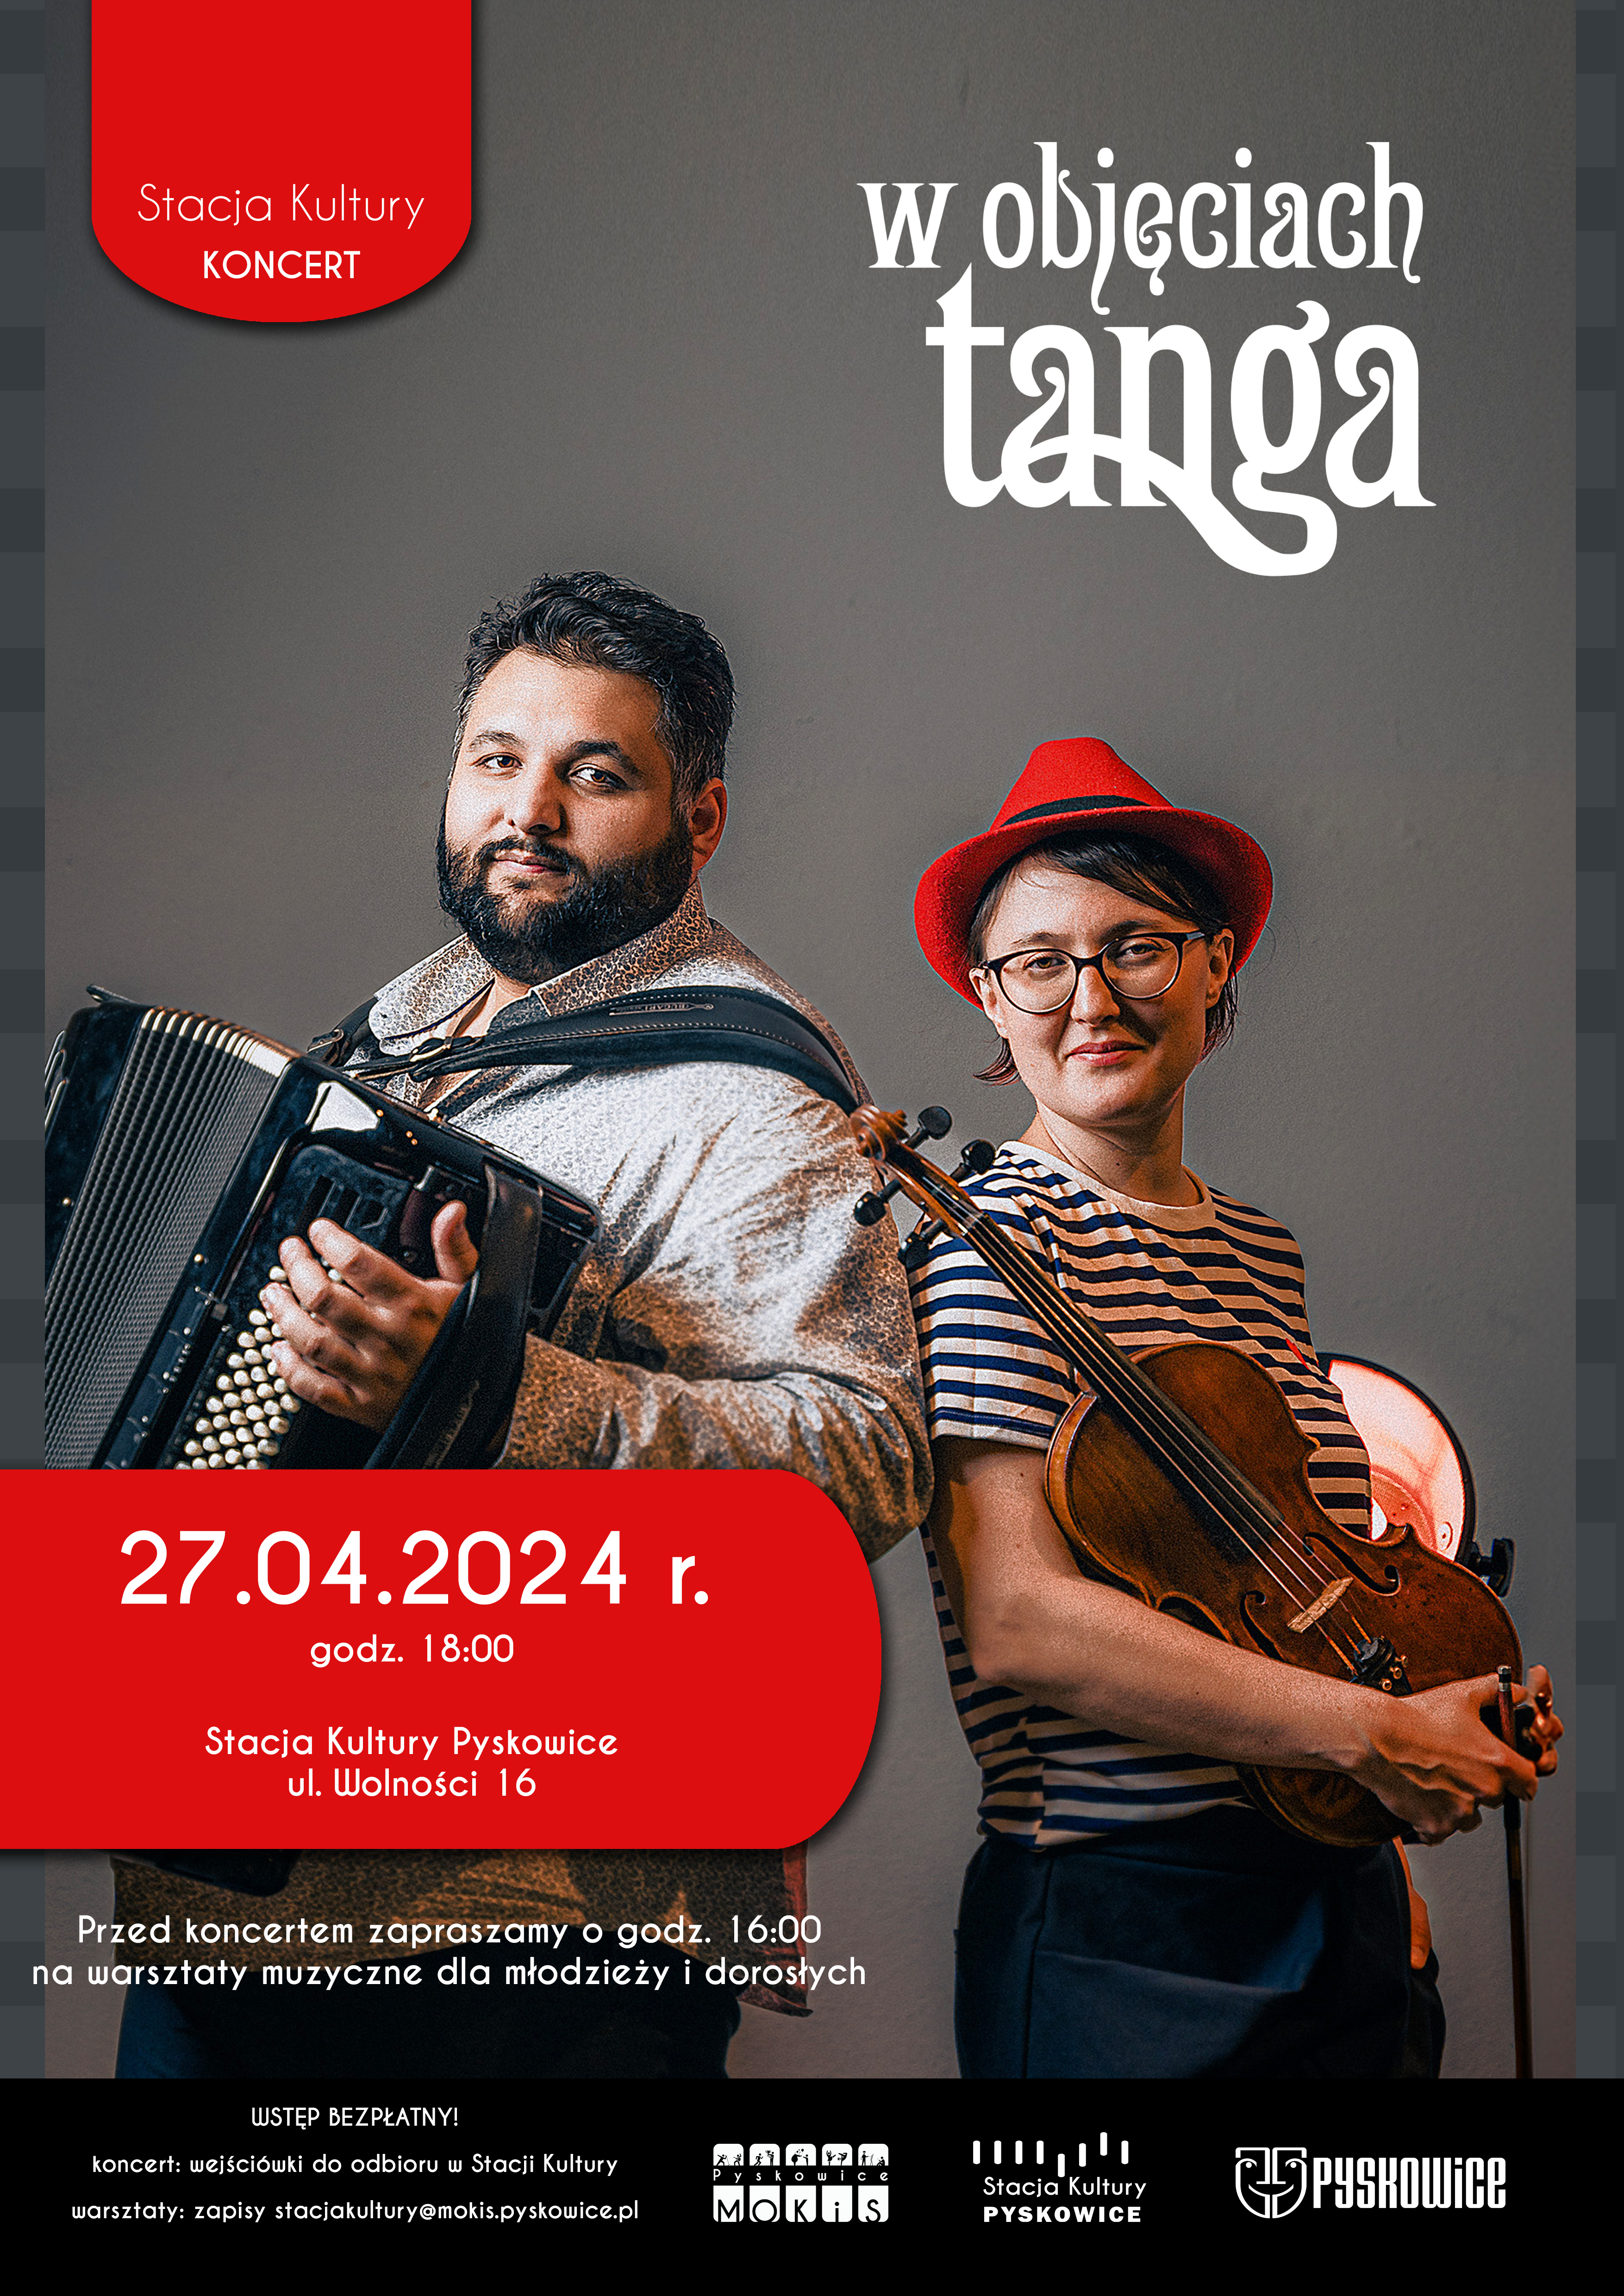 Plakat promujący koncert pod nazwą w objęciach tanga w Stacji Kultury Pyskowice